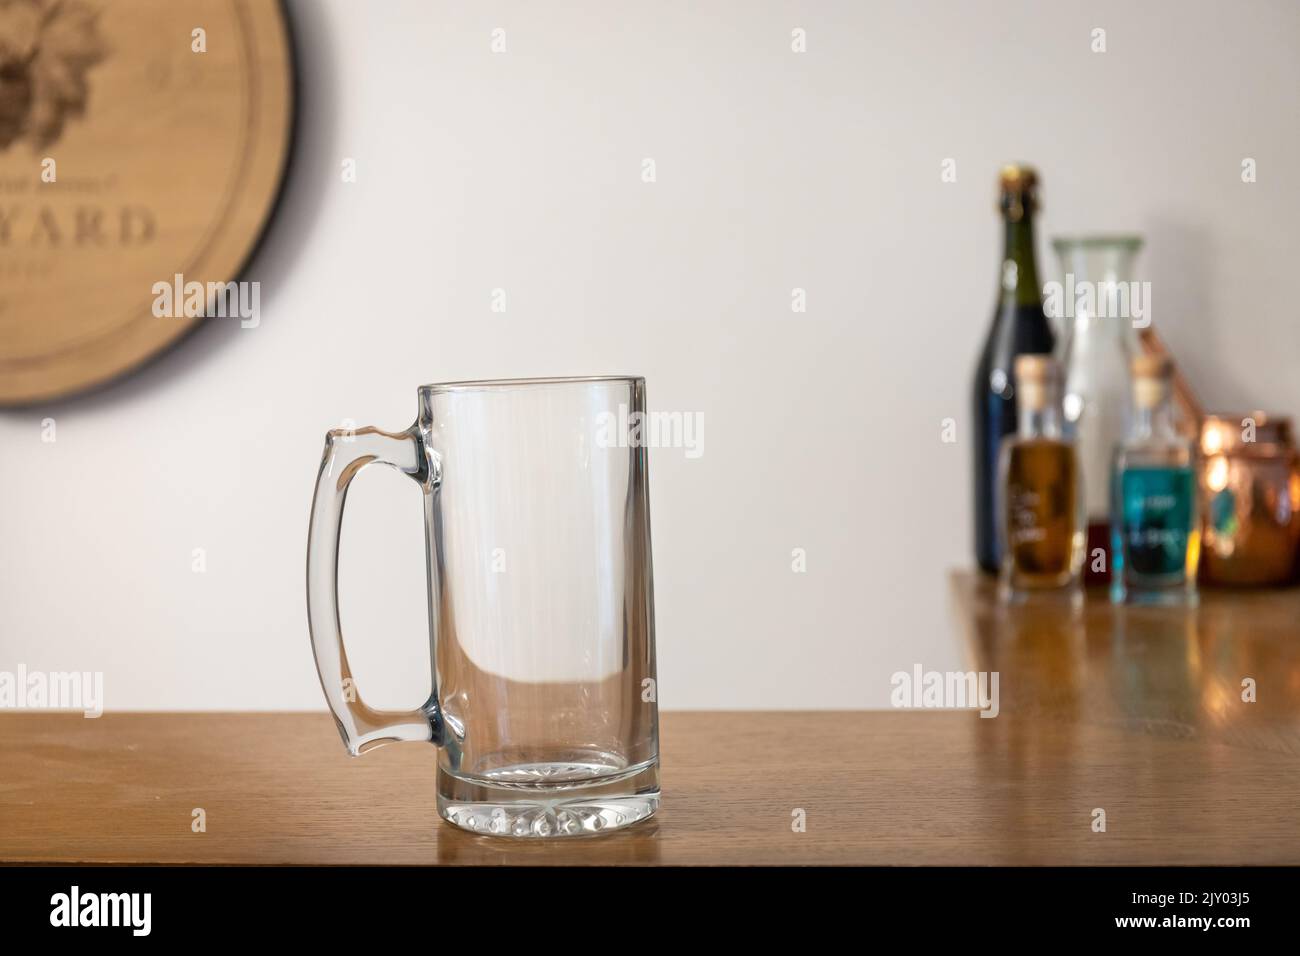 Vaso de cerveza Stein vacío en barra de madera Foto de stock